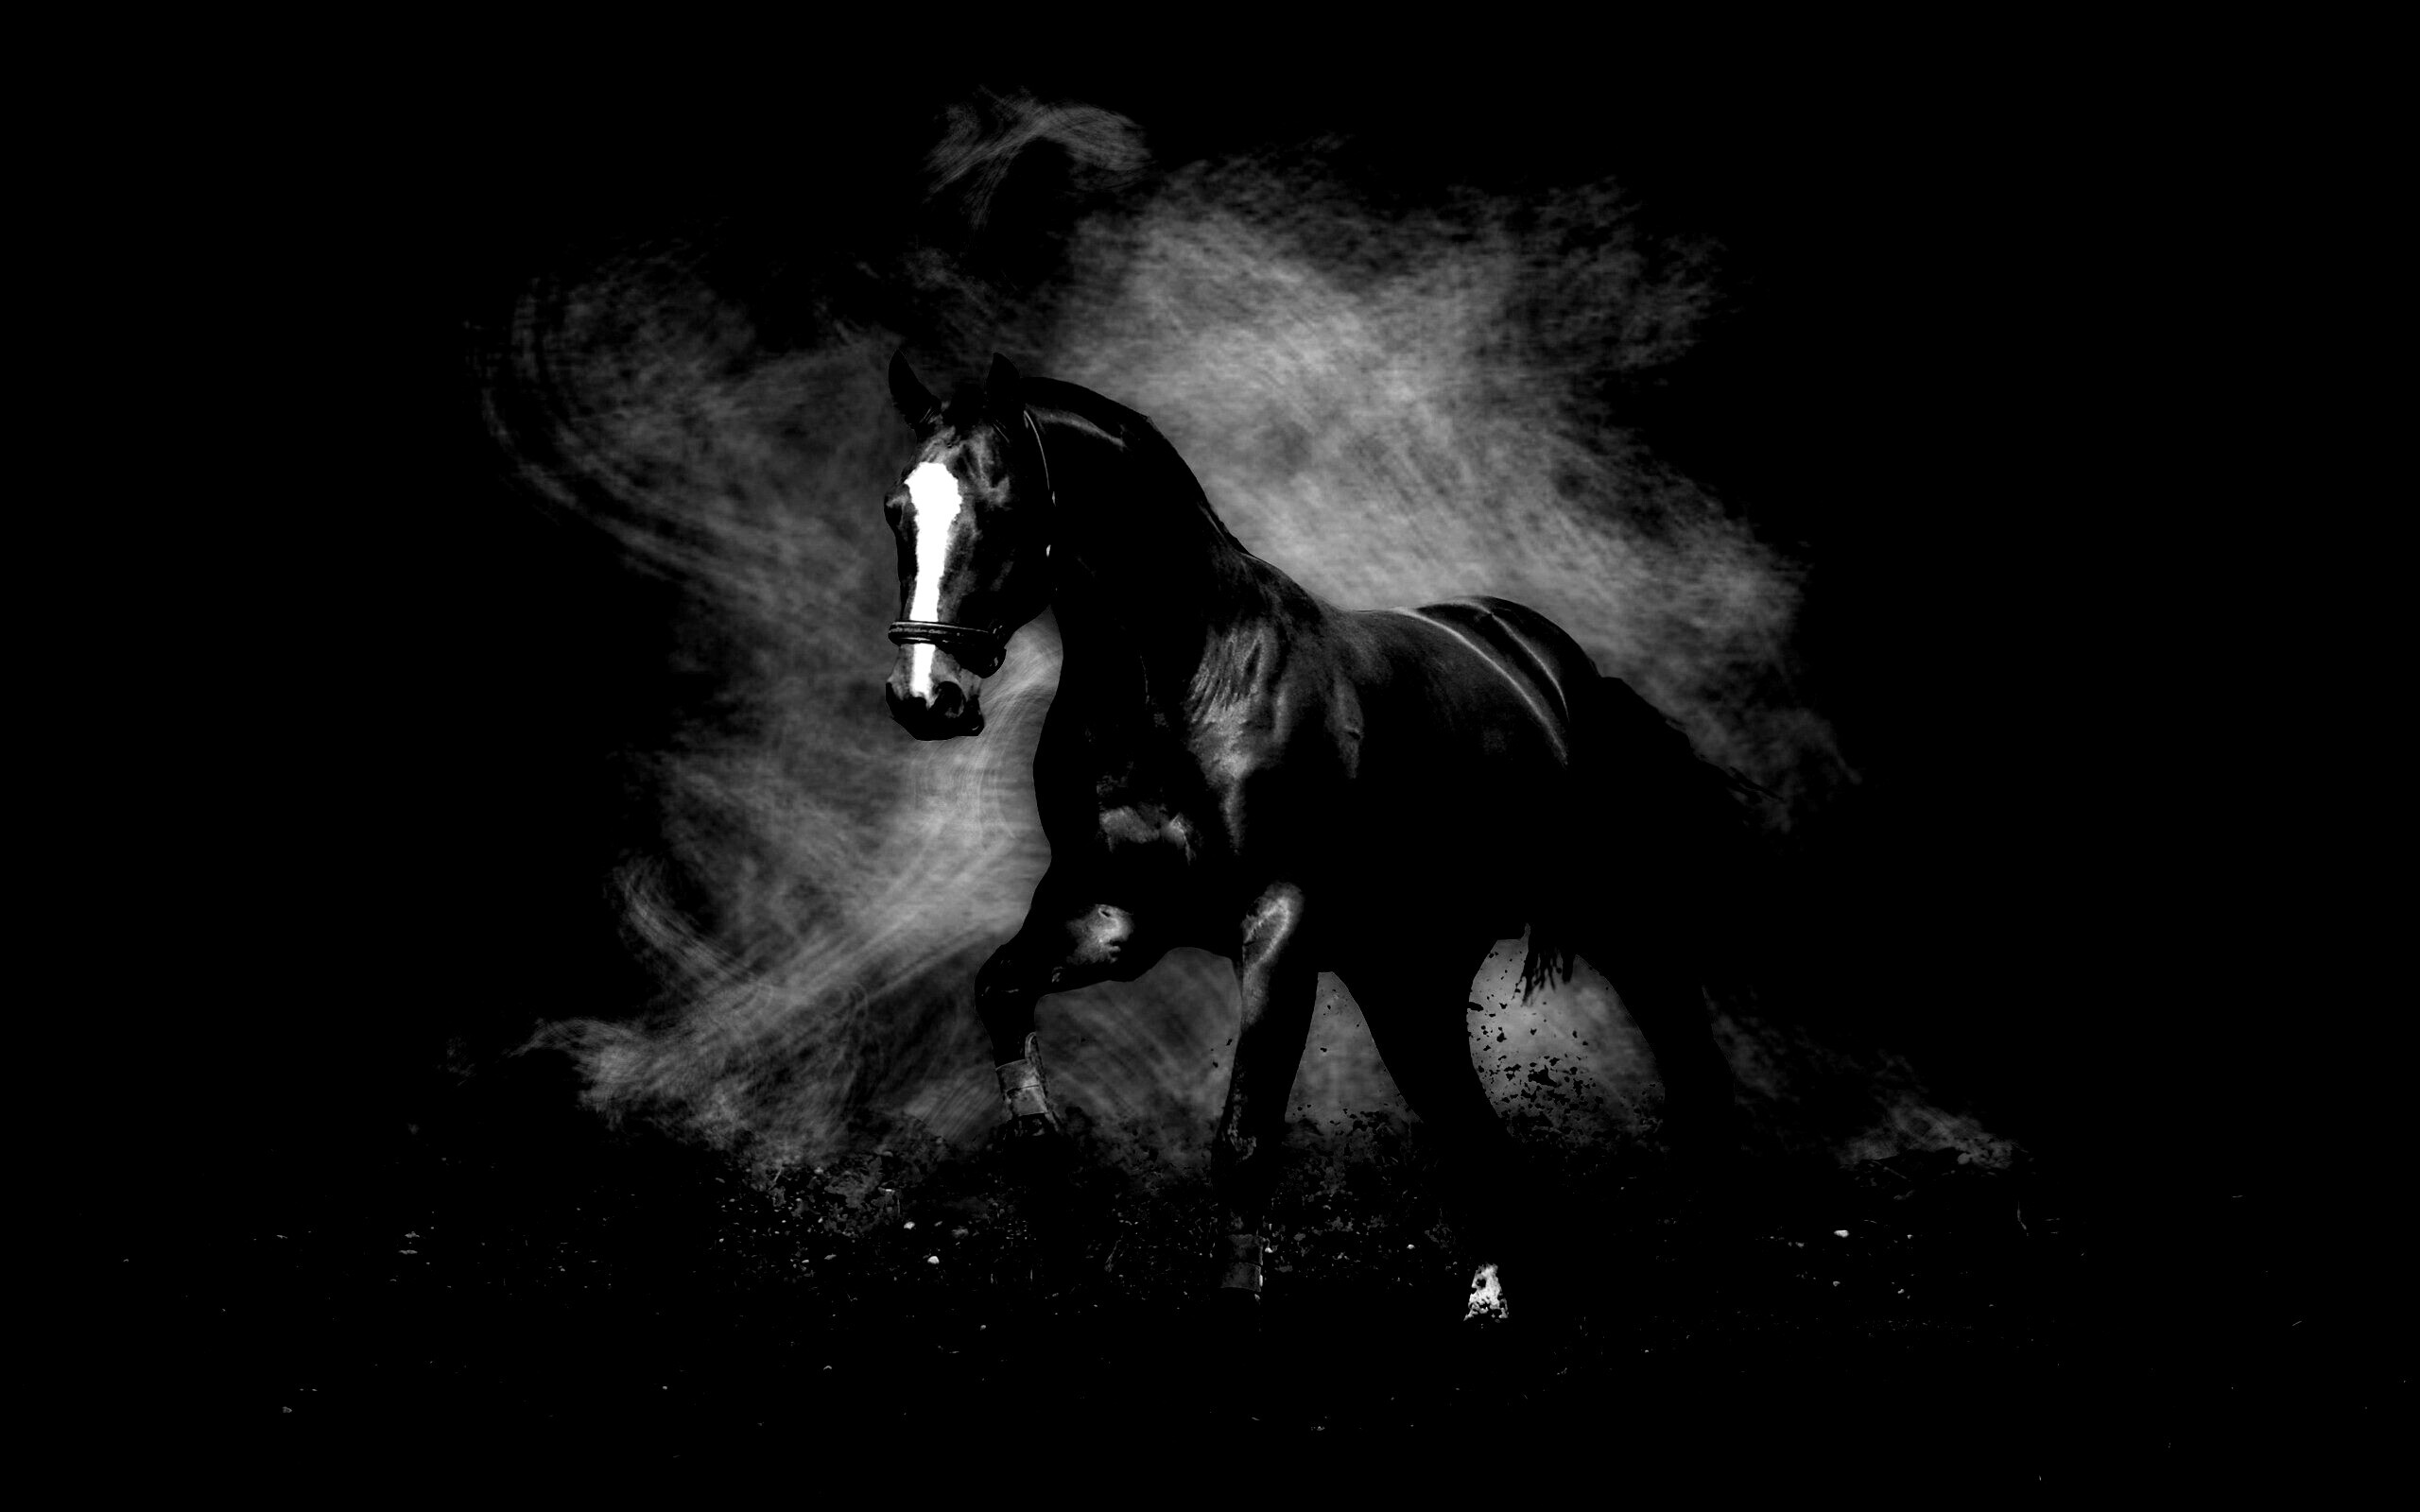 фото лошади на черном фоне